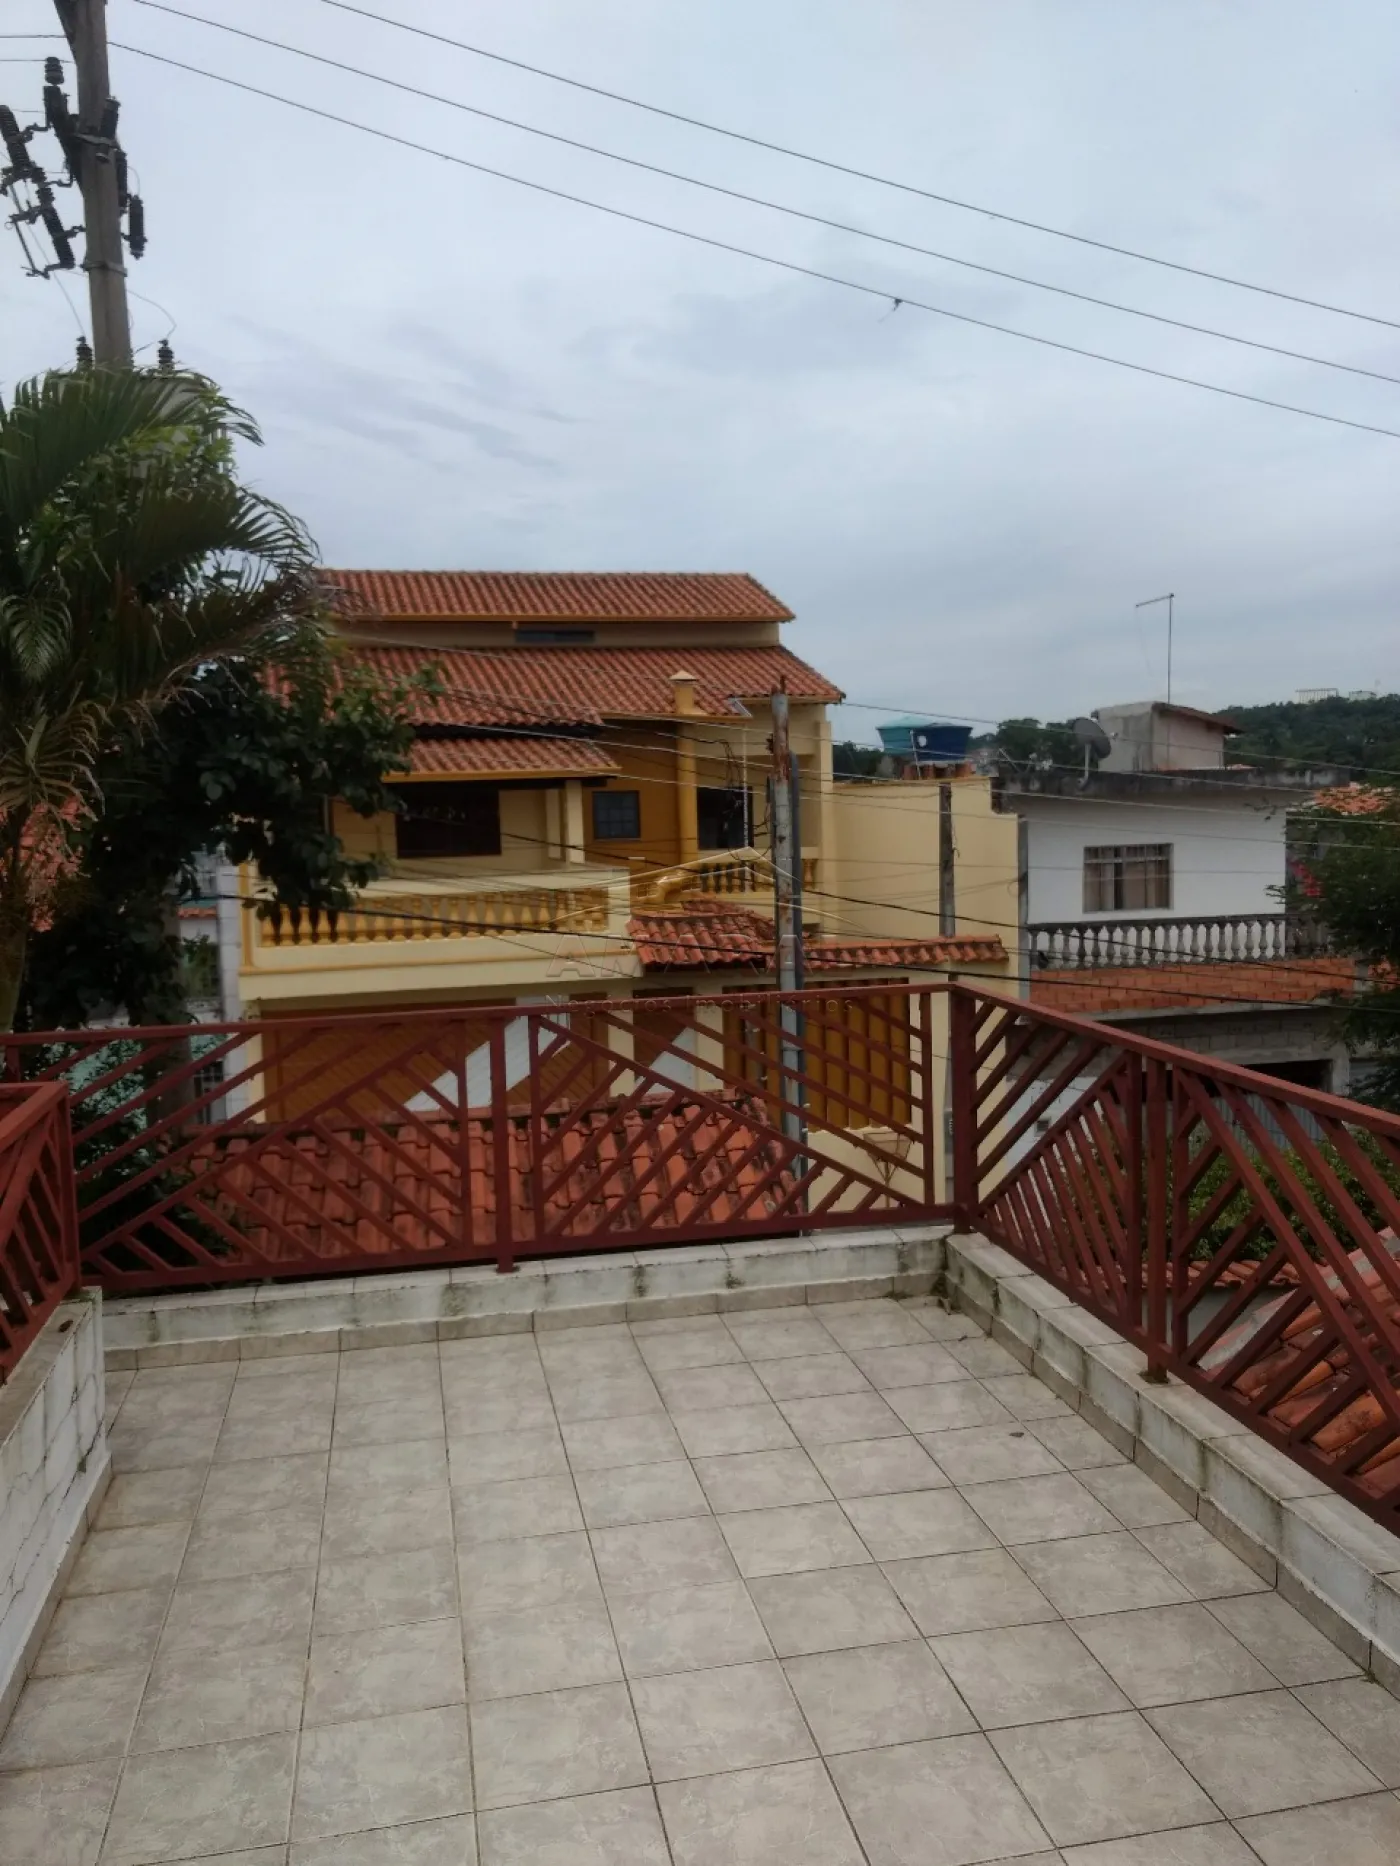 Comprar Casas / Térrea em Poá R$ 770.000,00 - Foto 11